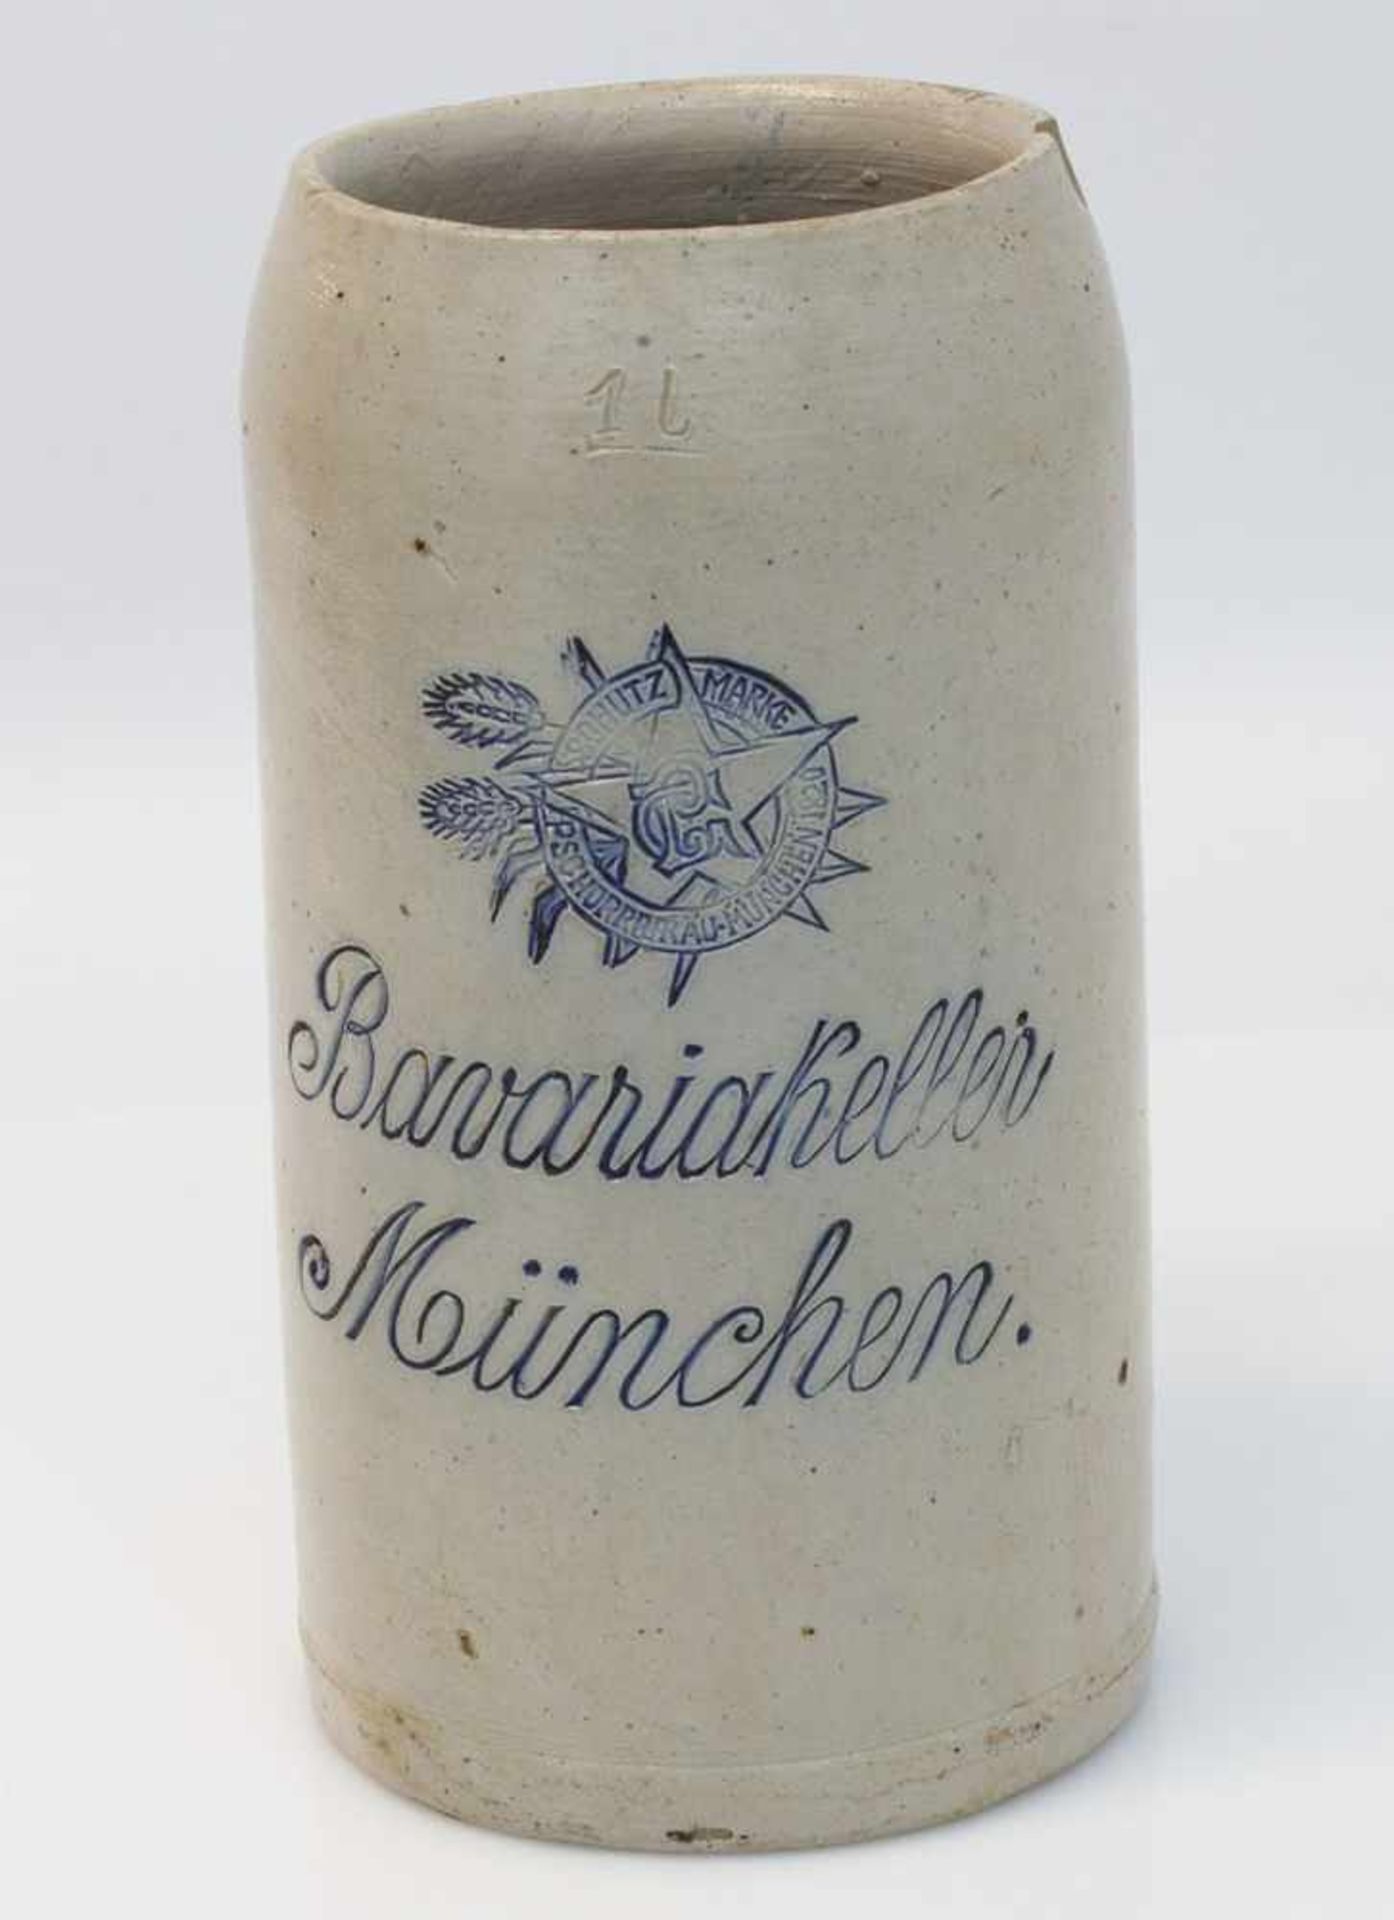 Kneipenkrug um 1920, "Bavariakeller - München", mit Schutz-Marke Pschorrbräu München, 1 Liter - Bild 2 aus 2